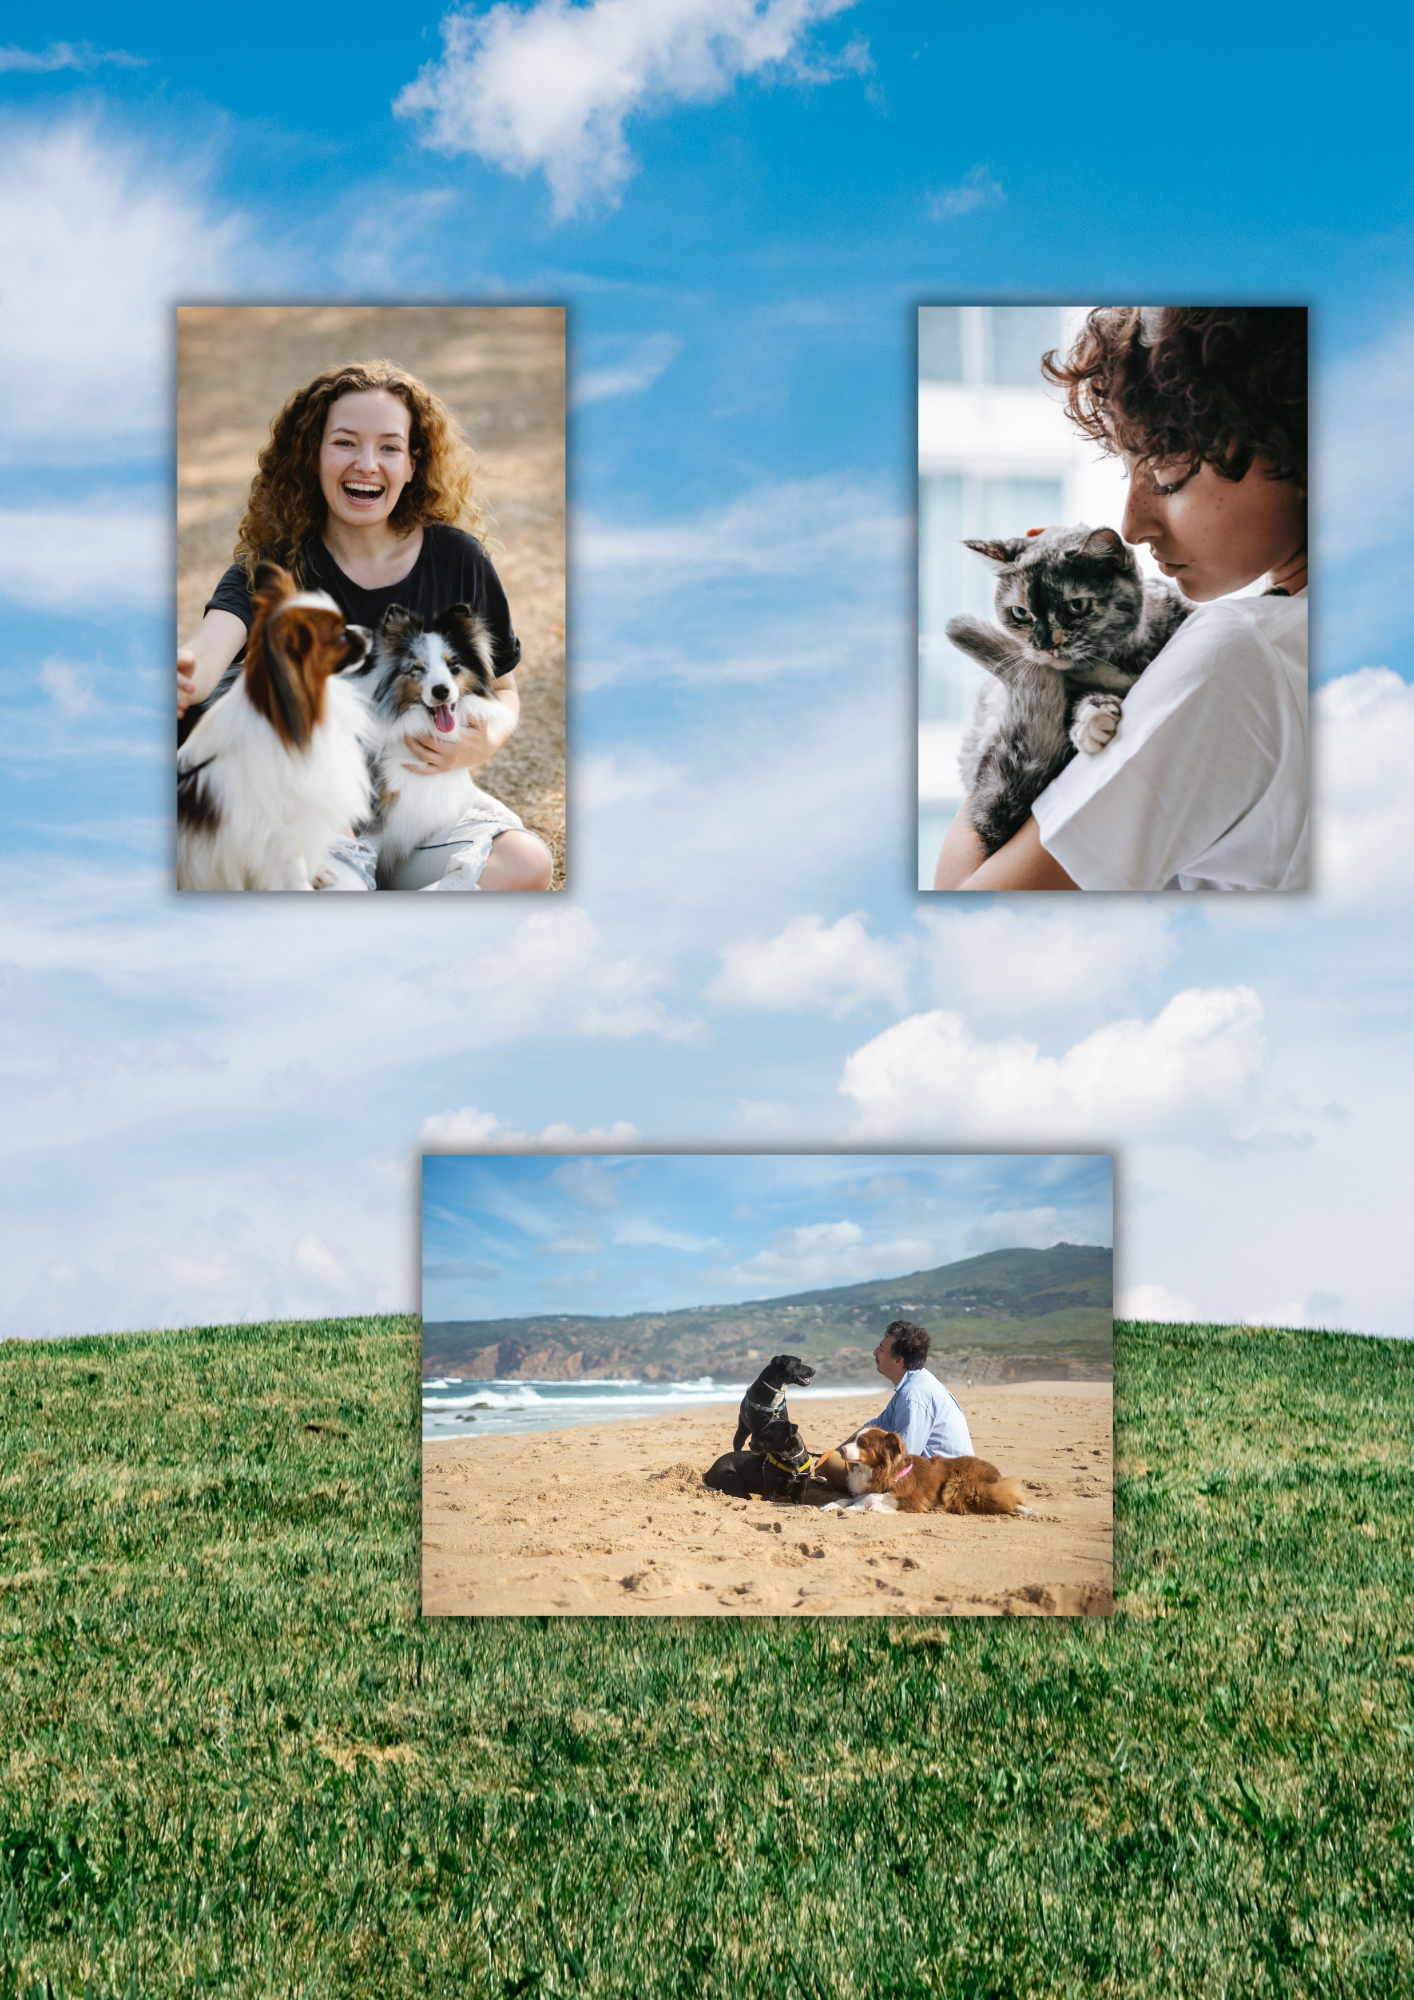 En la imagen aparece un paisaje de un prado y tres fotos, en la foto superior izquierda aparece una niña jugando con dos perros, en la foto superior derecha aparece una mujer abrazando a un gato, y en la foto inferior aparece un hombre en la playa con tres perros.